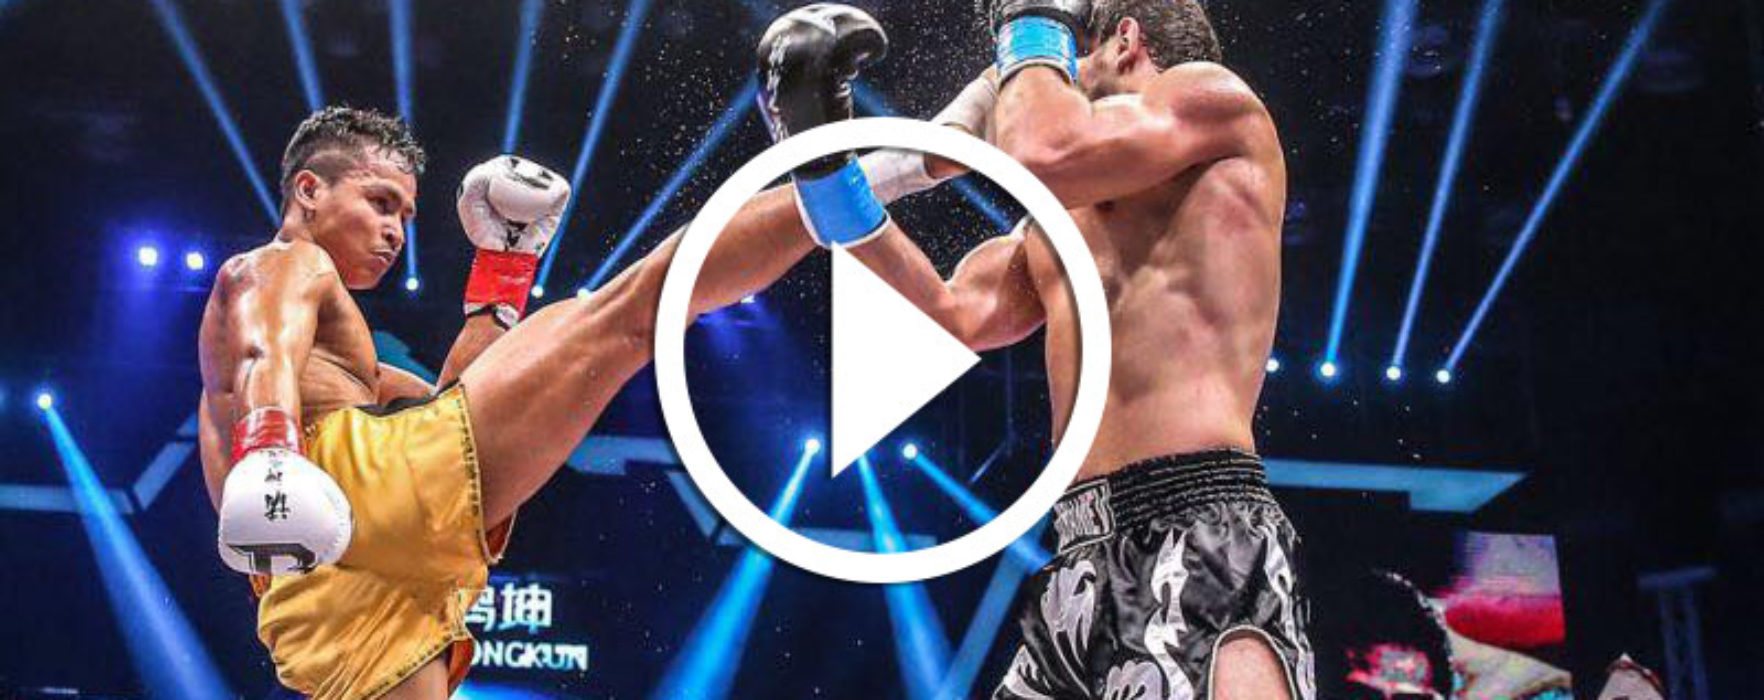 Video / Risultati: Superbon vs Khayal Dzhaniev, Kyshenko vs Pereira e altri – Kunlun Fight 48 – 31/07/16